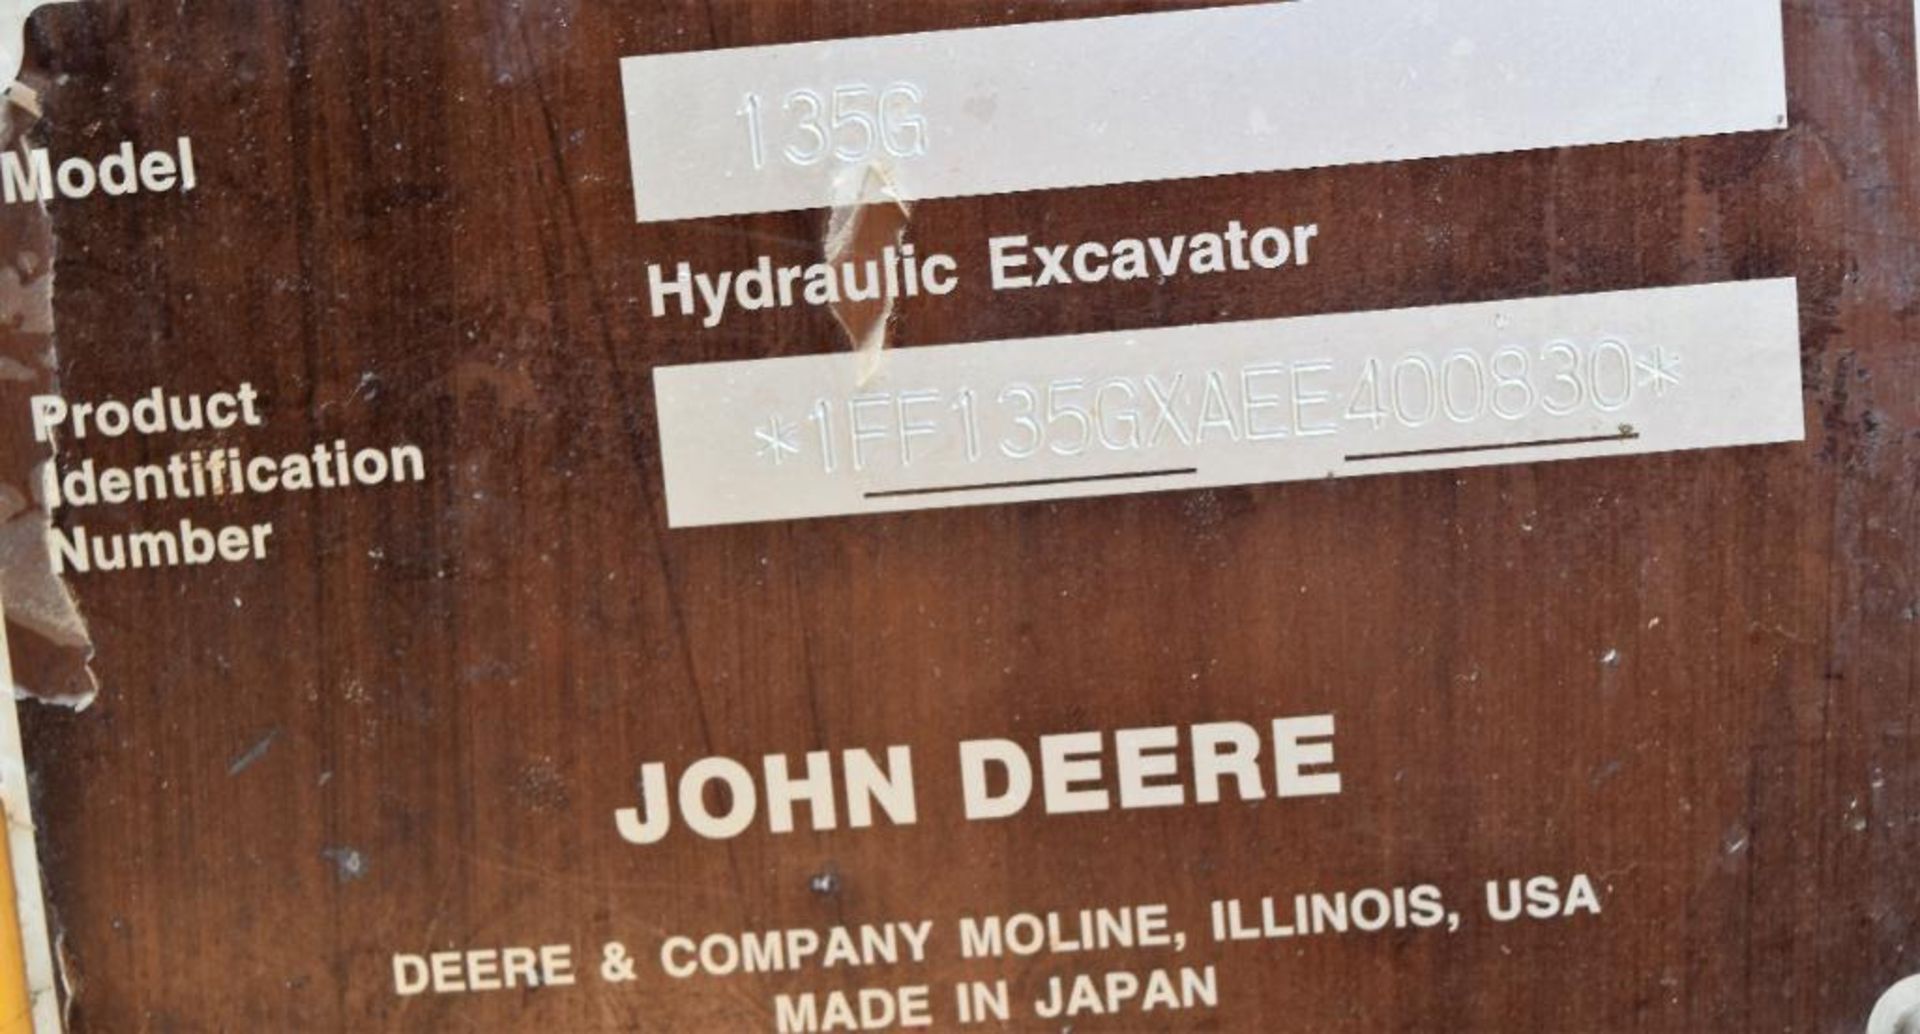 John Deere Model 135G Hydraulic Excavator S/N: 1FF135GXAEE400830 (2015) 1-24" Q/C Digging Bucket, 1- - Image 35 of 62